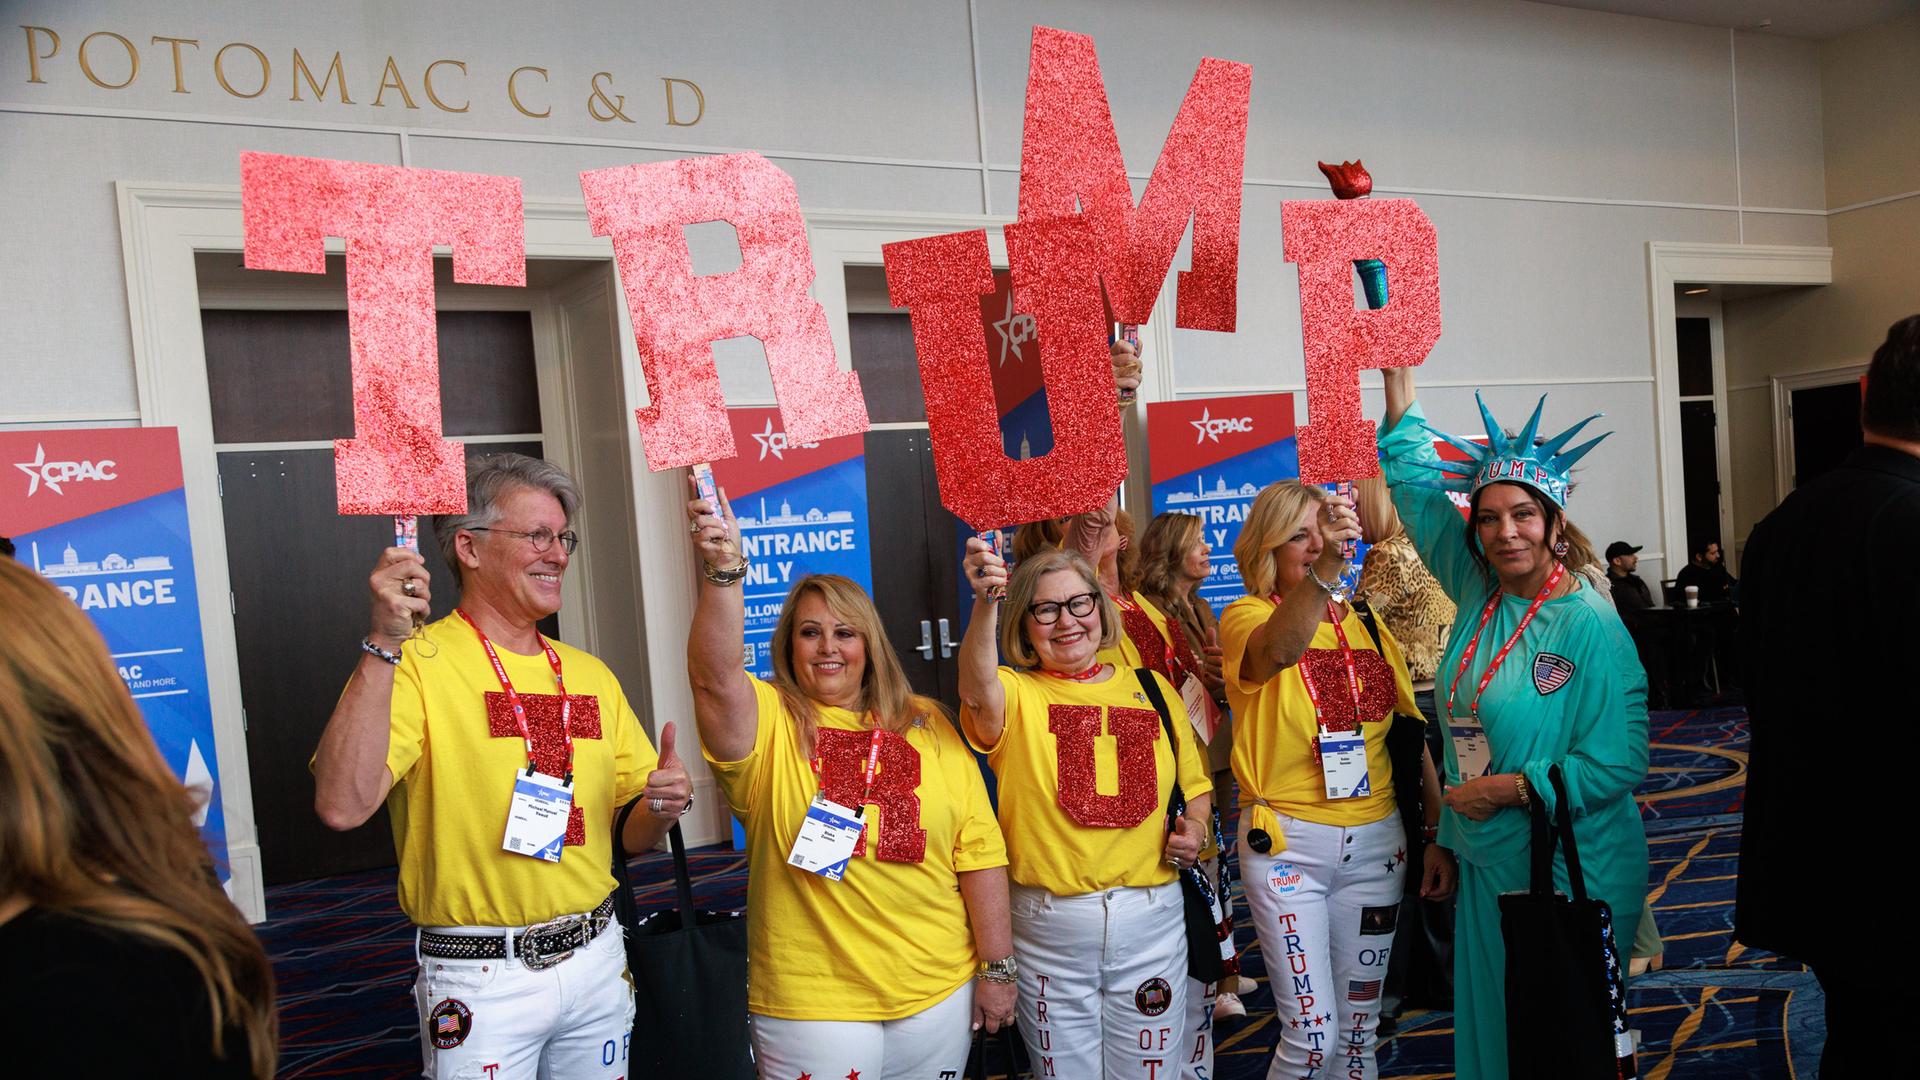 Ein Gruppe von Menschen in gelben T-Shirts steht aufgereiht nebeneinander. Sie halten rote Buchstaben in die Höhe, die den Namen "Trump" ergeben